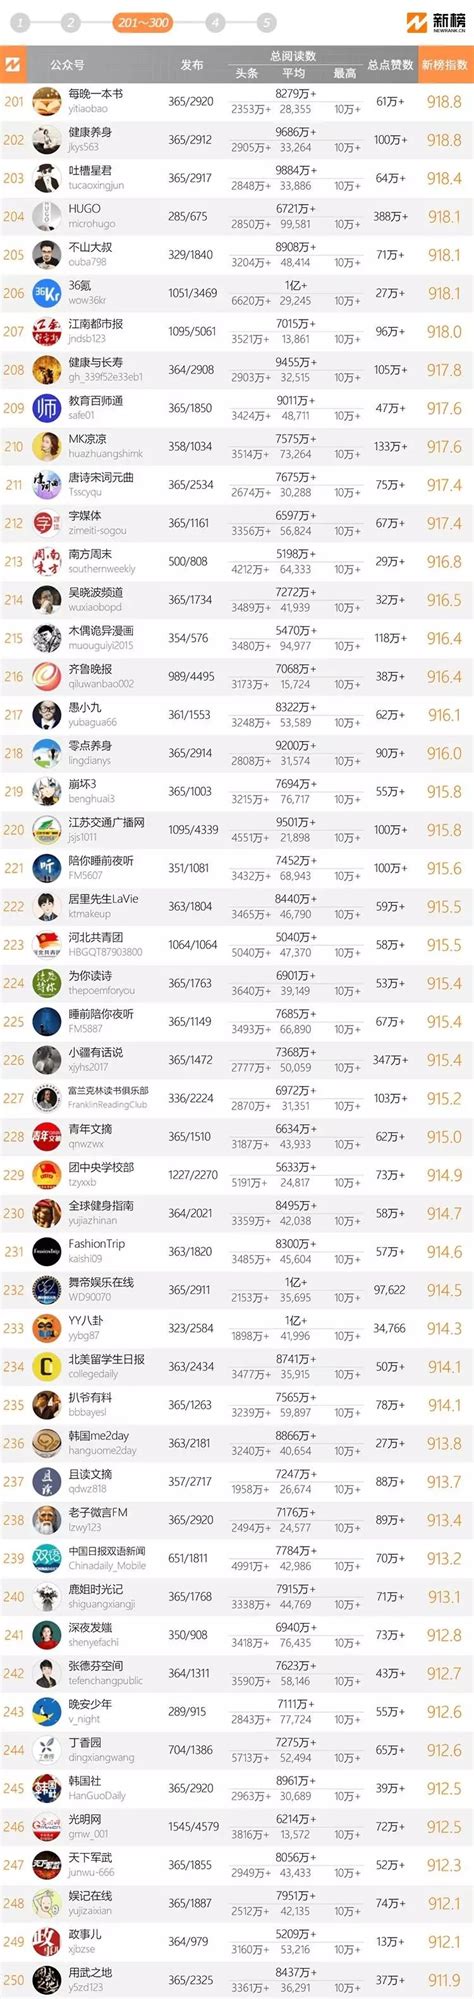 十大微信公众号排名榜-2018中国微信500强排名榜(阅读量排序)_热点_第一排行榜